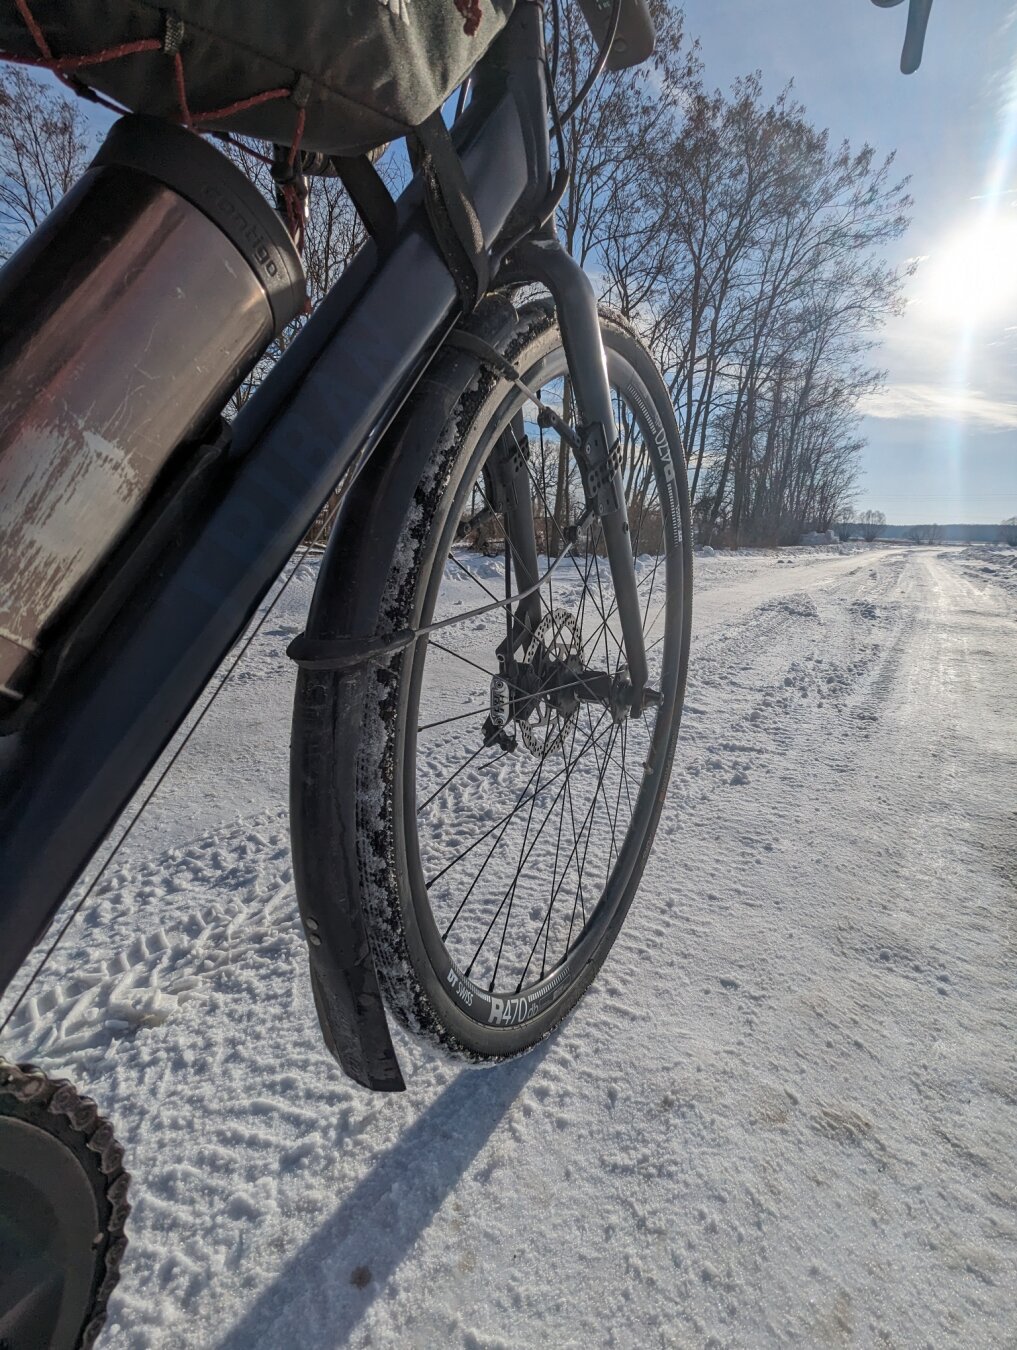 No i powolutku pchamy ten 🚴 w tym sezonie. Załapałem się na mniejsze lub większe zaspy, które powstały w wyniku wczorajszego silnego wiatru. 

#winterride #winterwonderland #winter #slowride #rower #cycling #gravel #biketooter #biking #cyclinglifestyle #polska